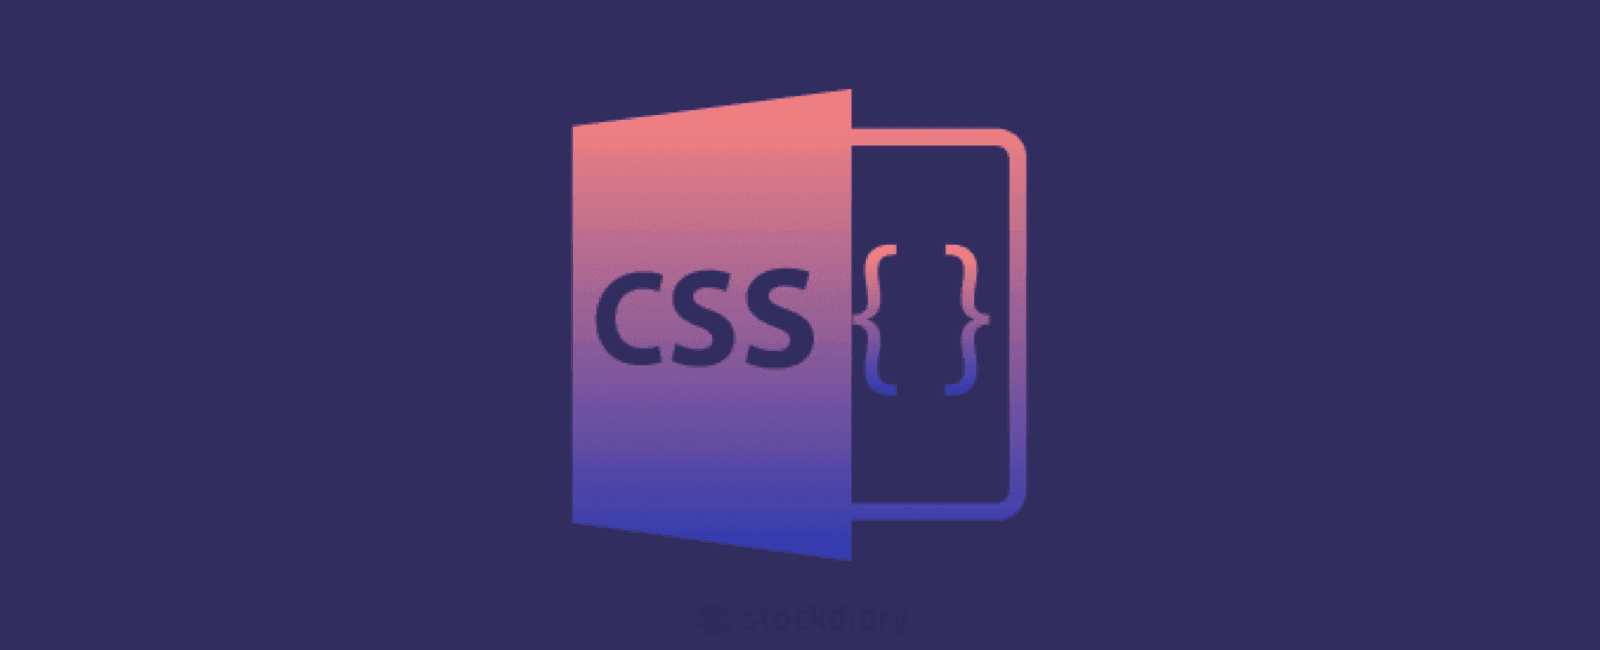 「代码片段」分享 9 个与反馈提示组件相关的 CSS 代码片段